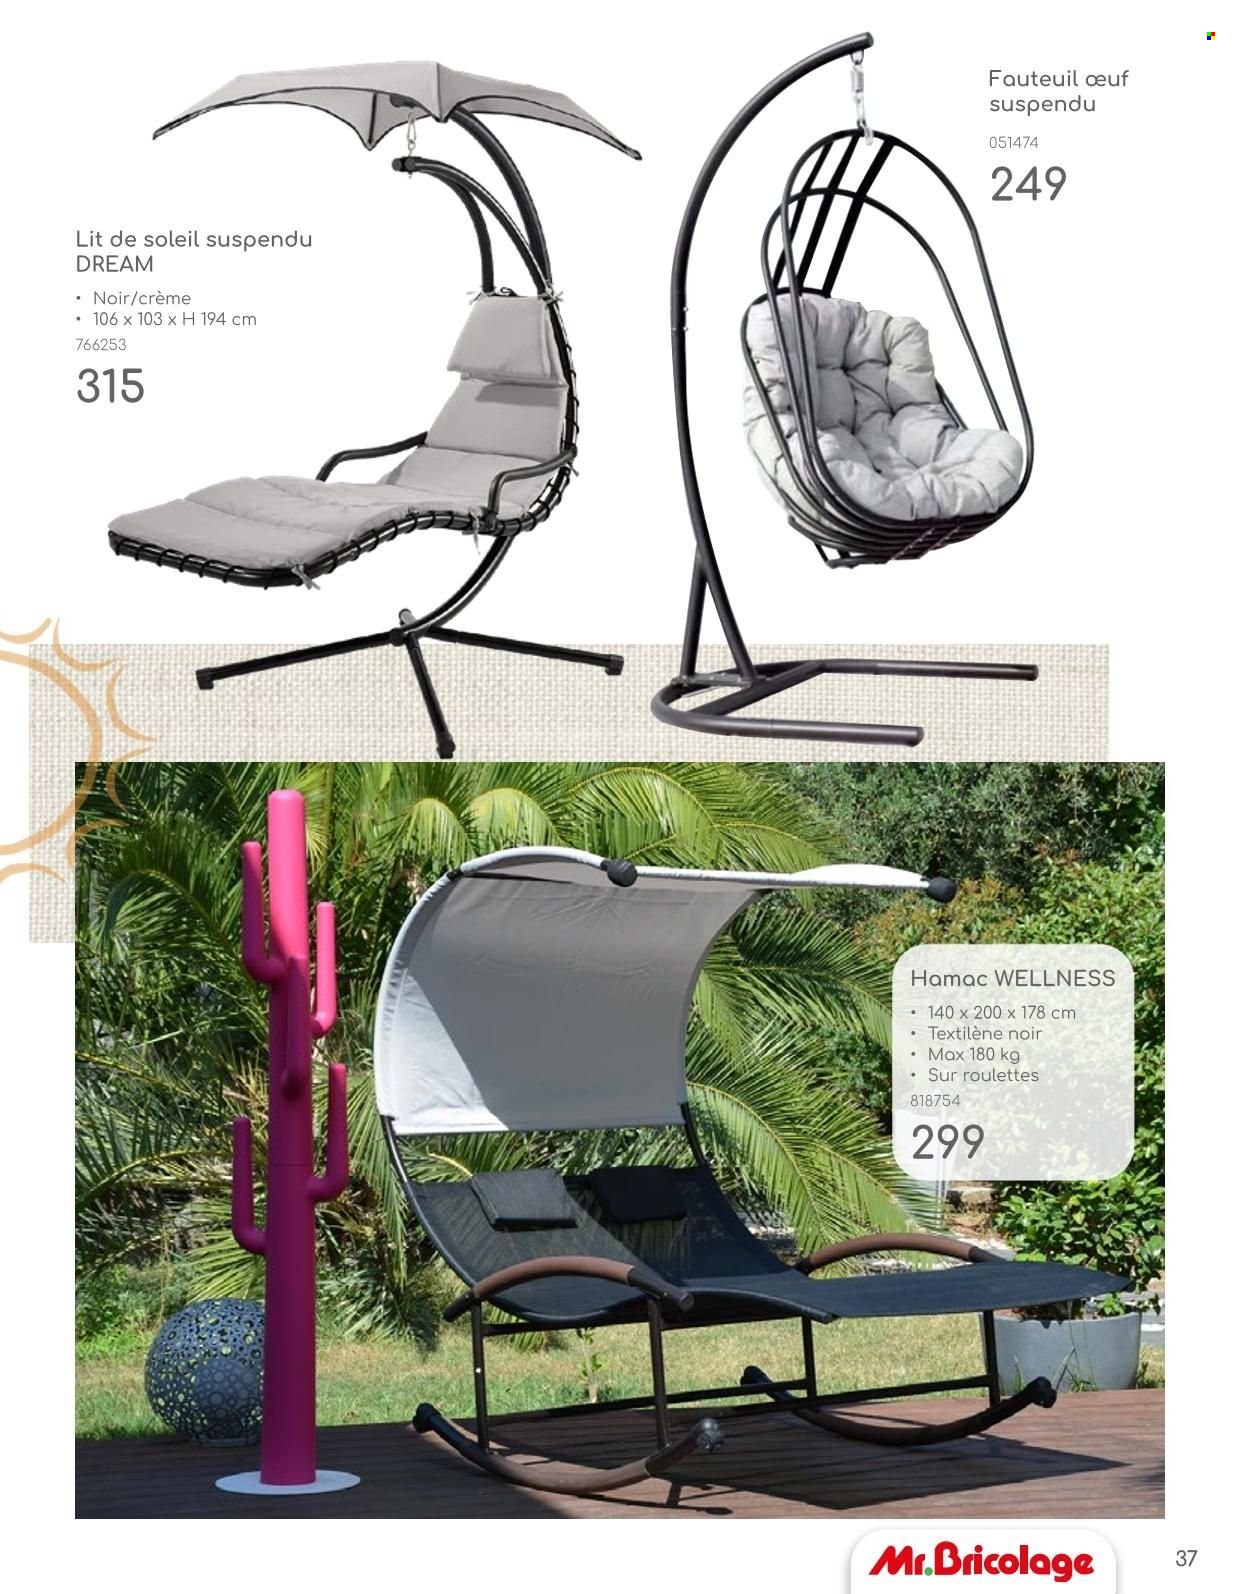 thumbnail - Catalogue Mr. Bricolage - Produits soldés - fauteuil, fauteuil oeuf suspendu. Page 37.